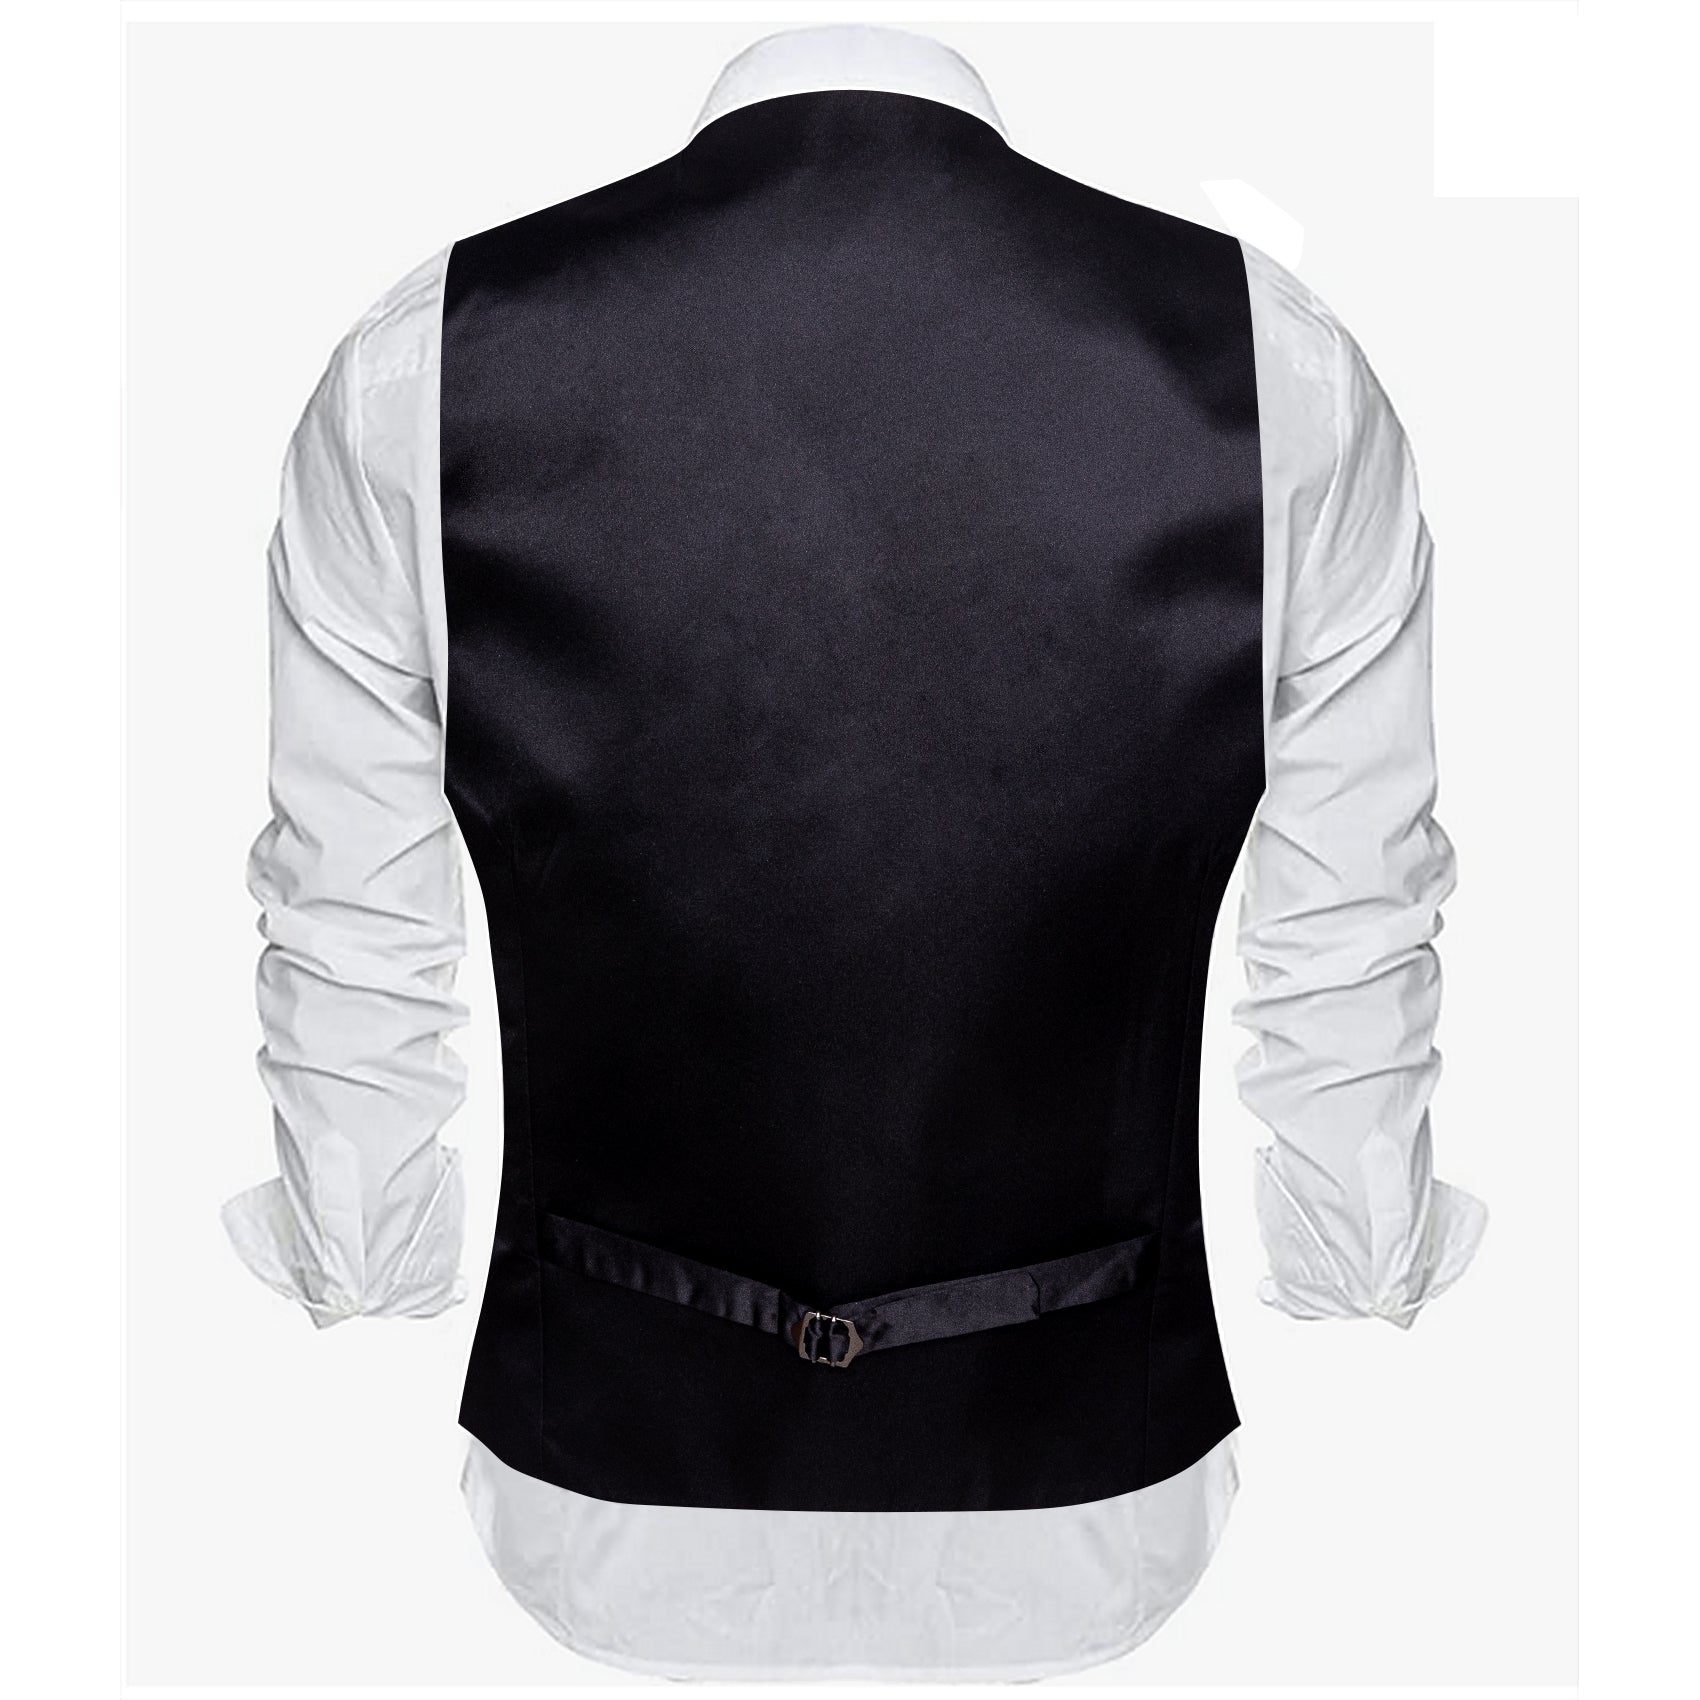 Barry.wang Men's Vest Formal Dark Khaki Solid V-Neck Waistcoat Vest for Business